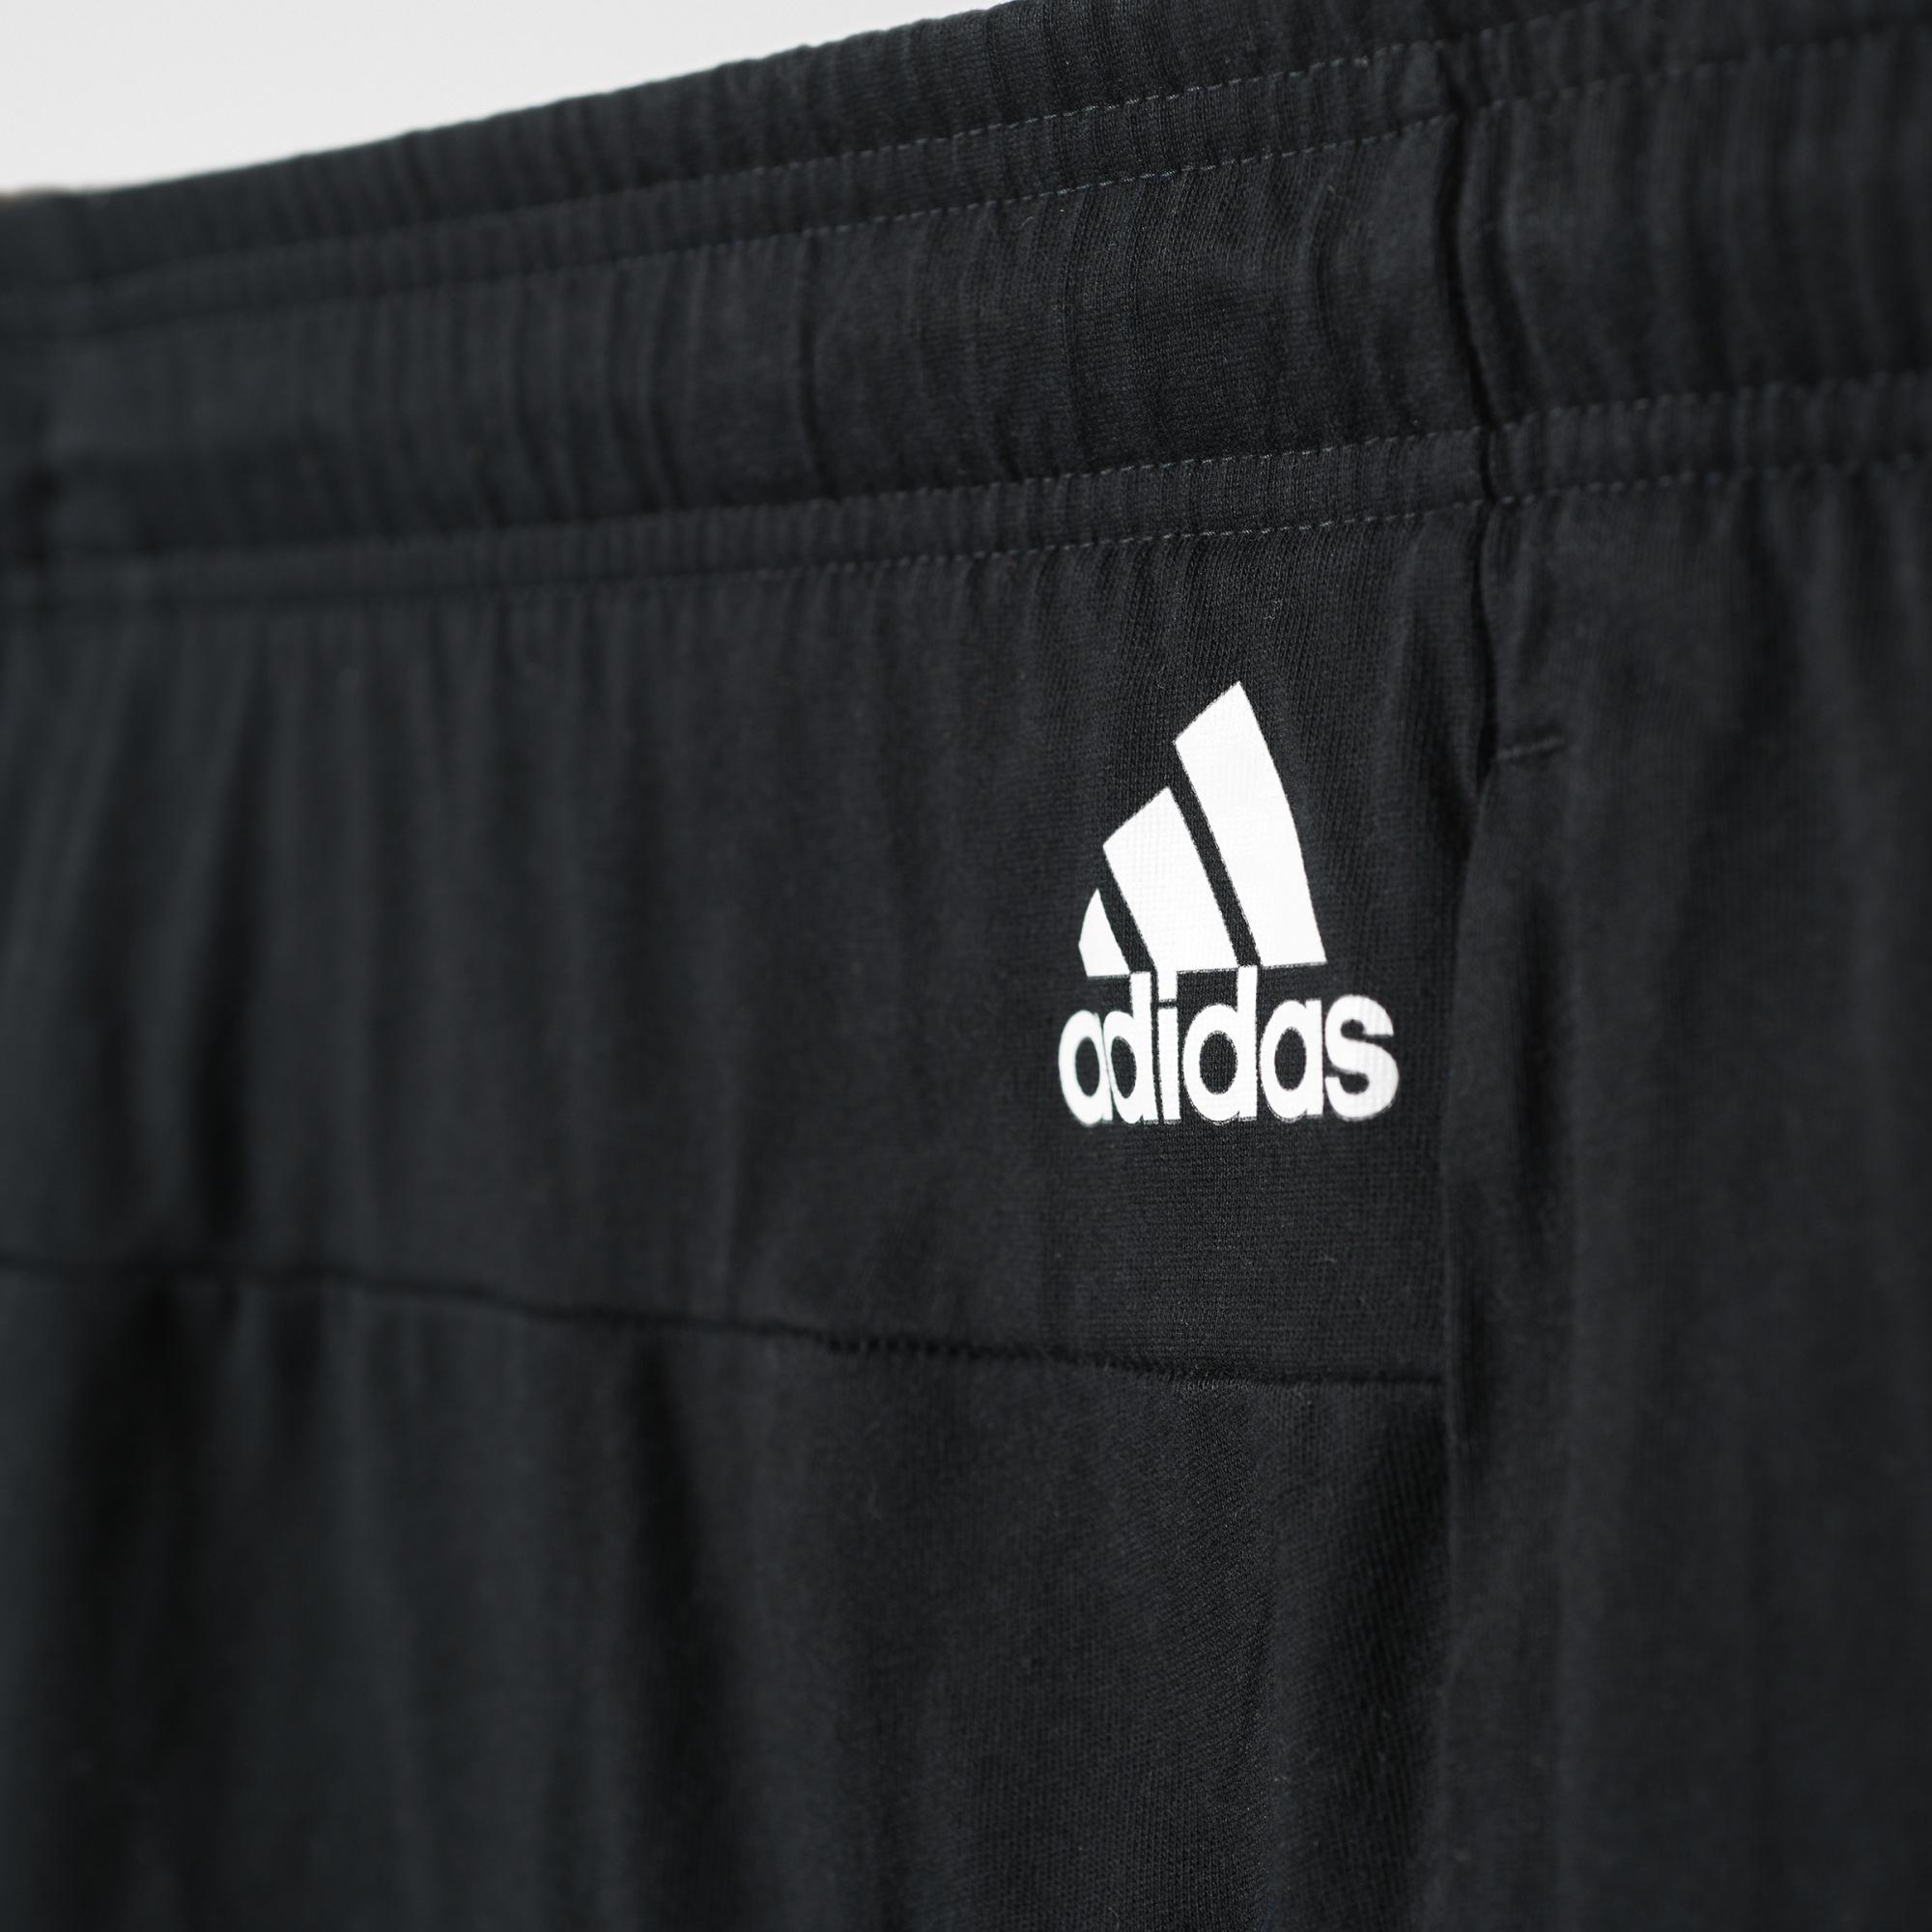 Adidas Short/Malla 3S (negro/blanco)